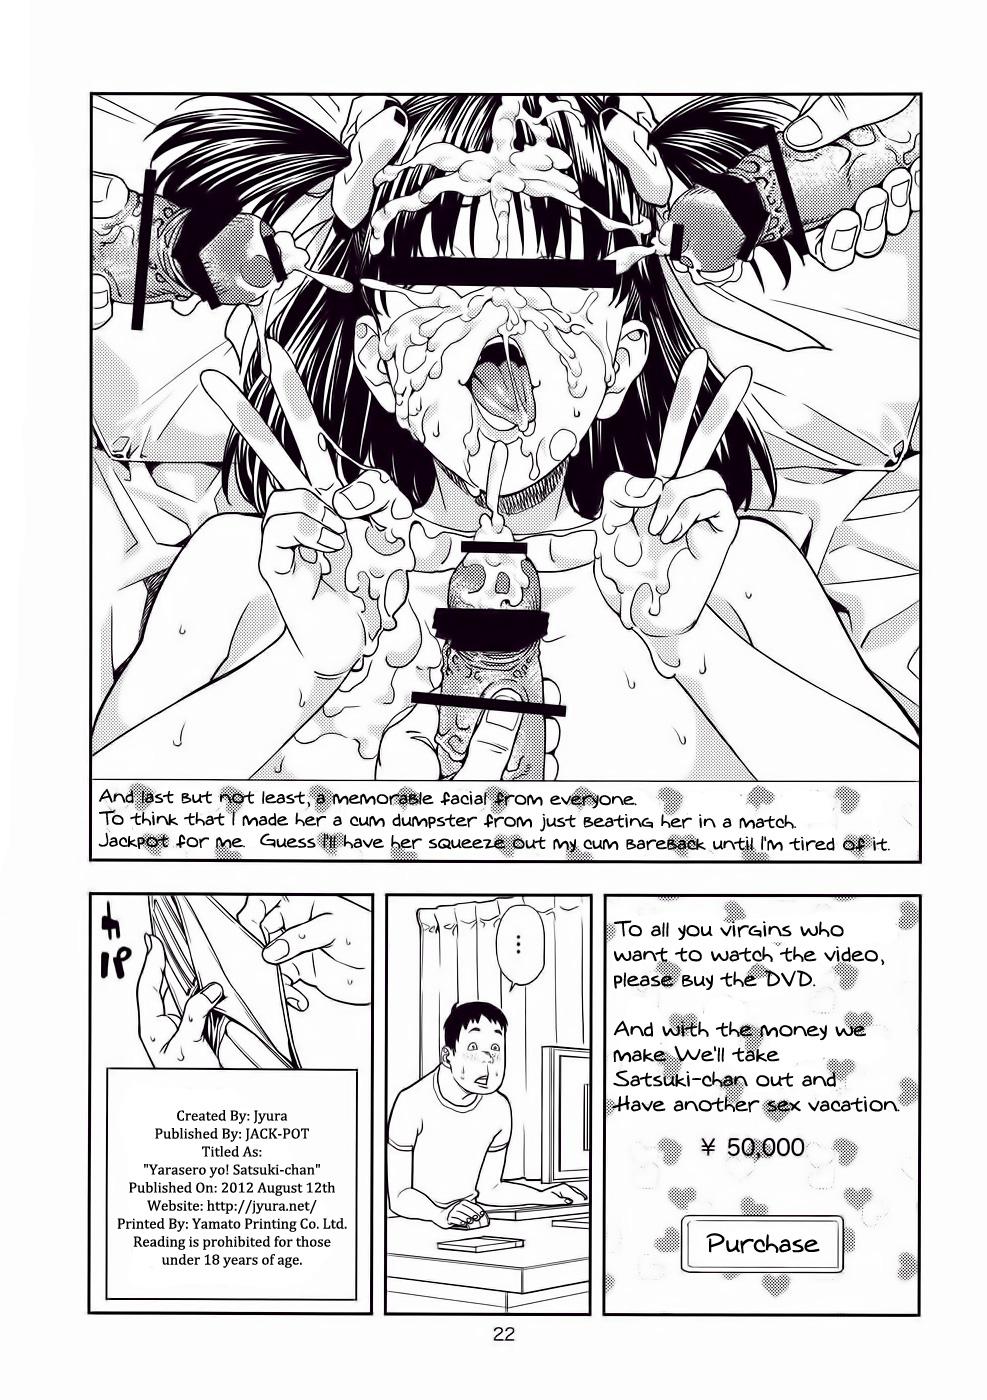 Big Dicks Yarasero yo! Satsuki-chan - Tsukiatte yo satsuki-chan Dykes - Page 21